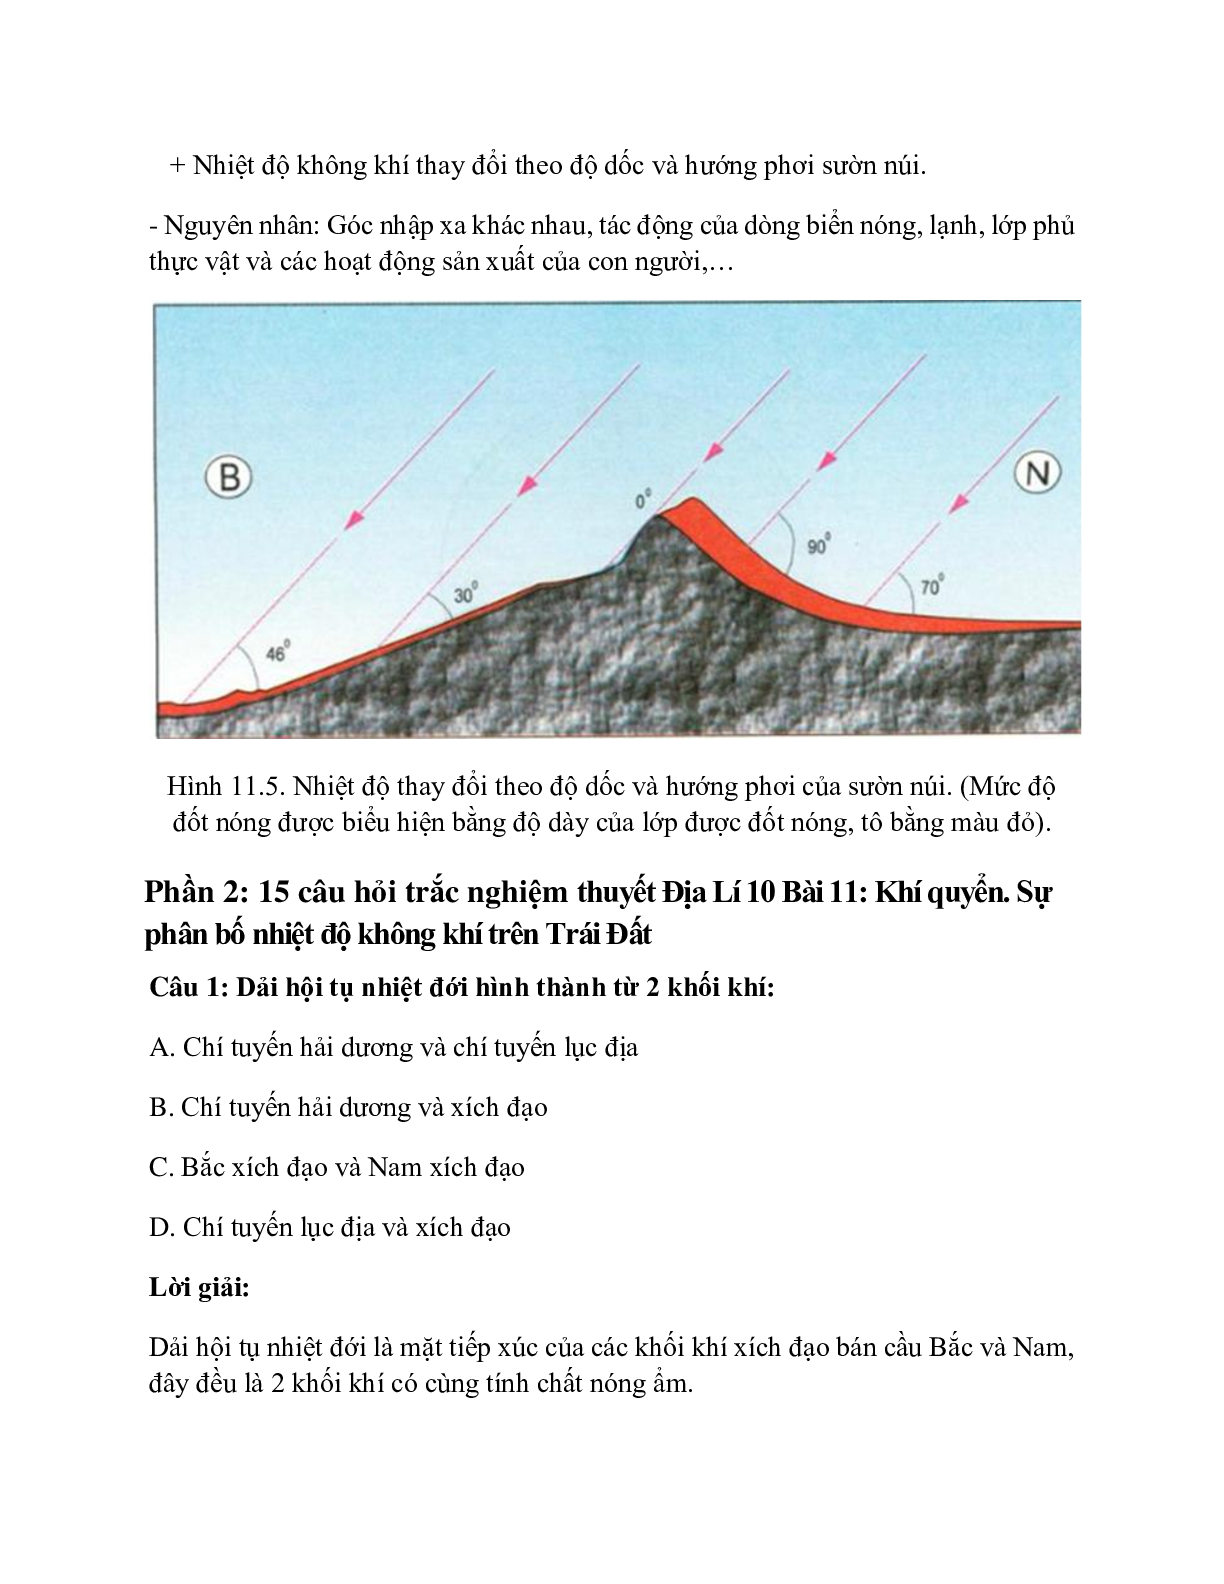 Địa Lí 10 Bài 11 (Lý thuyết và trắc nghiệm): Khí quyển. Sự phân bố nhiệt độ không khí trên Trái Đất (trang 6)